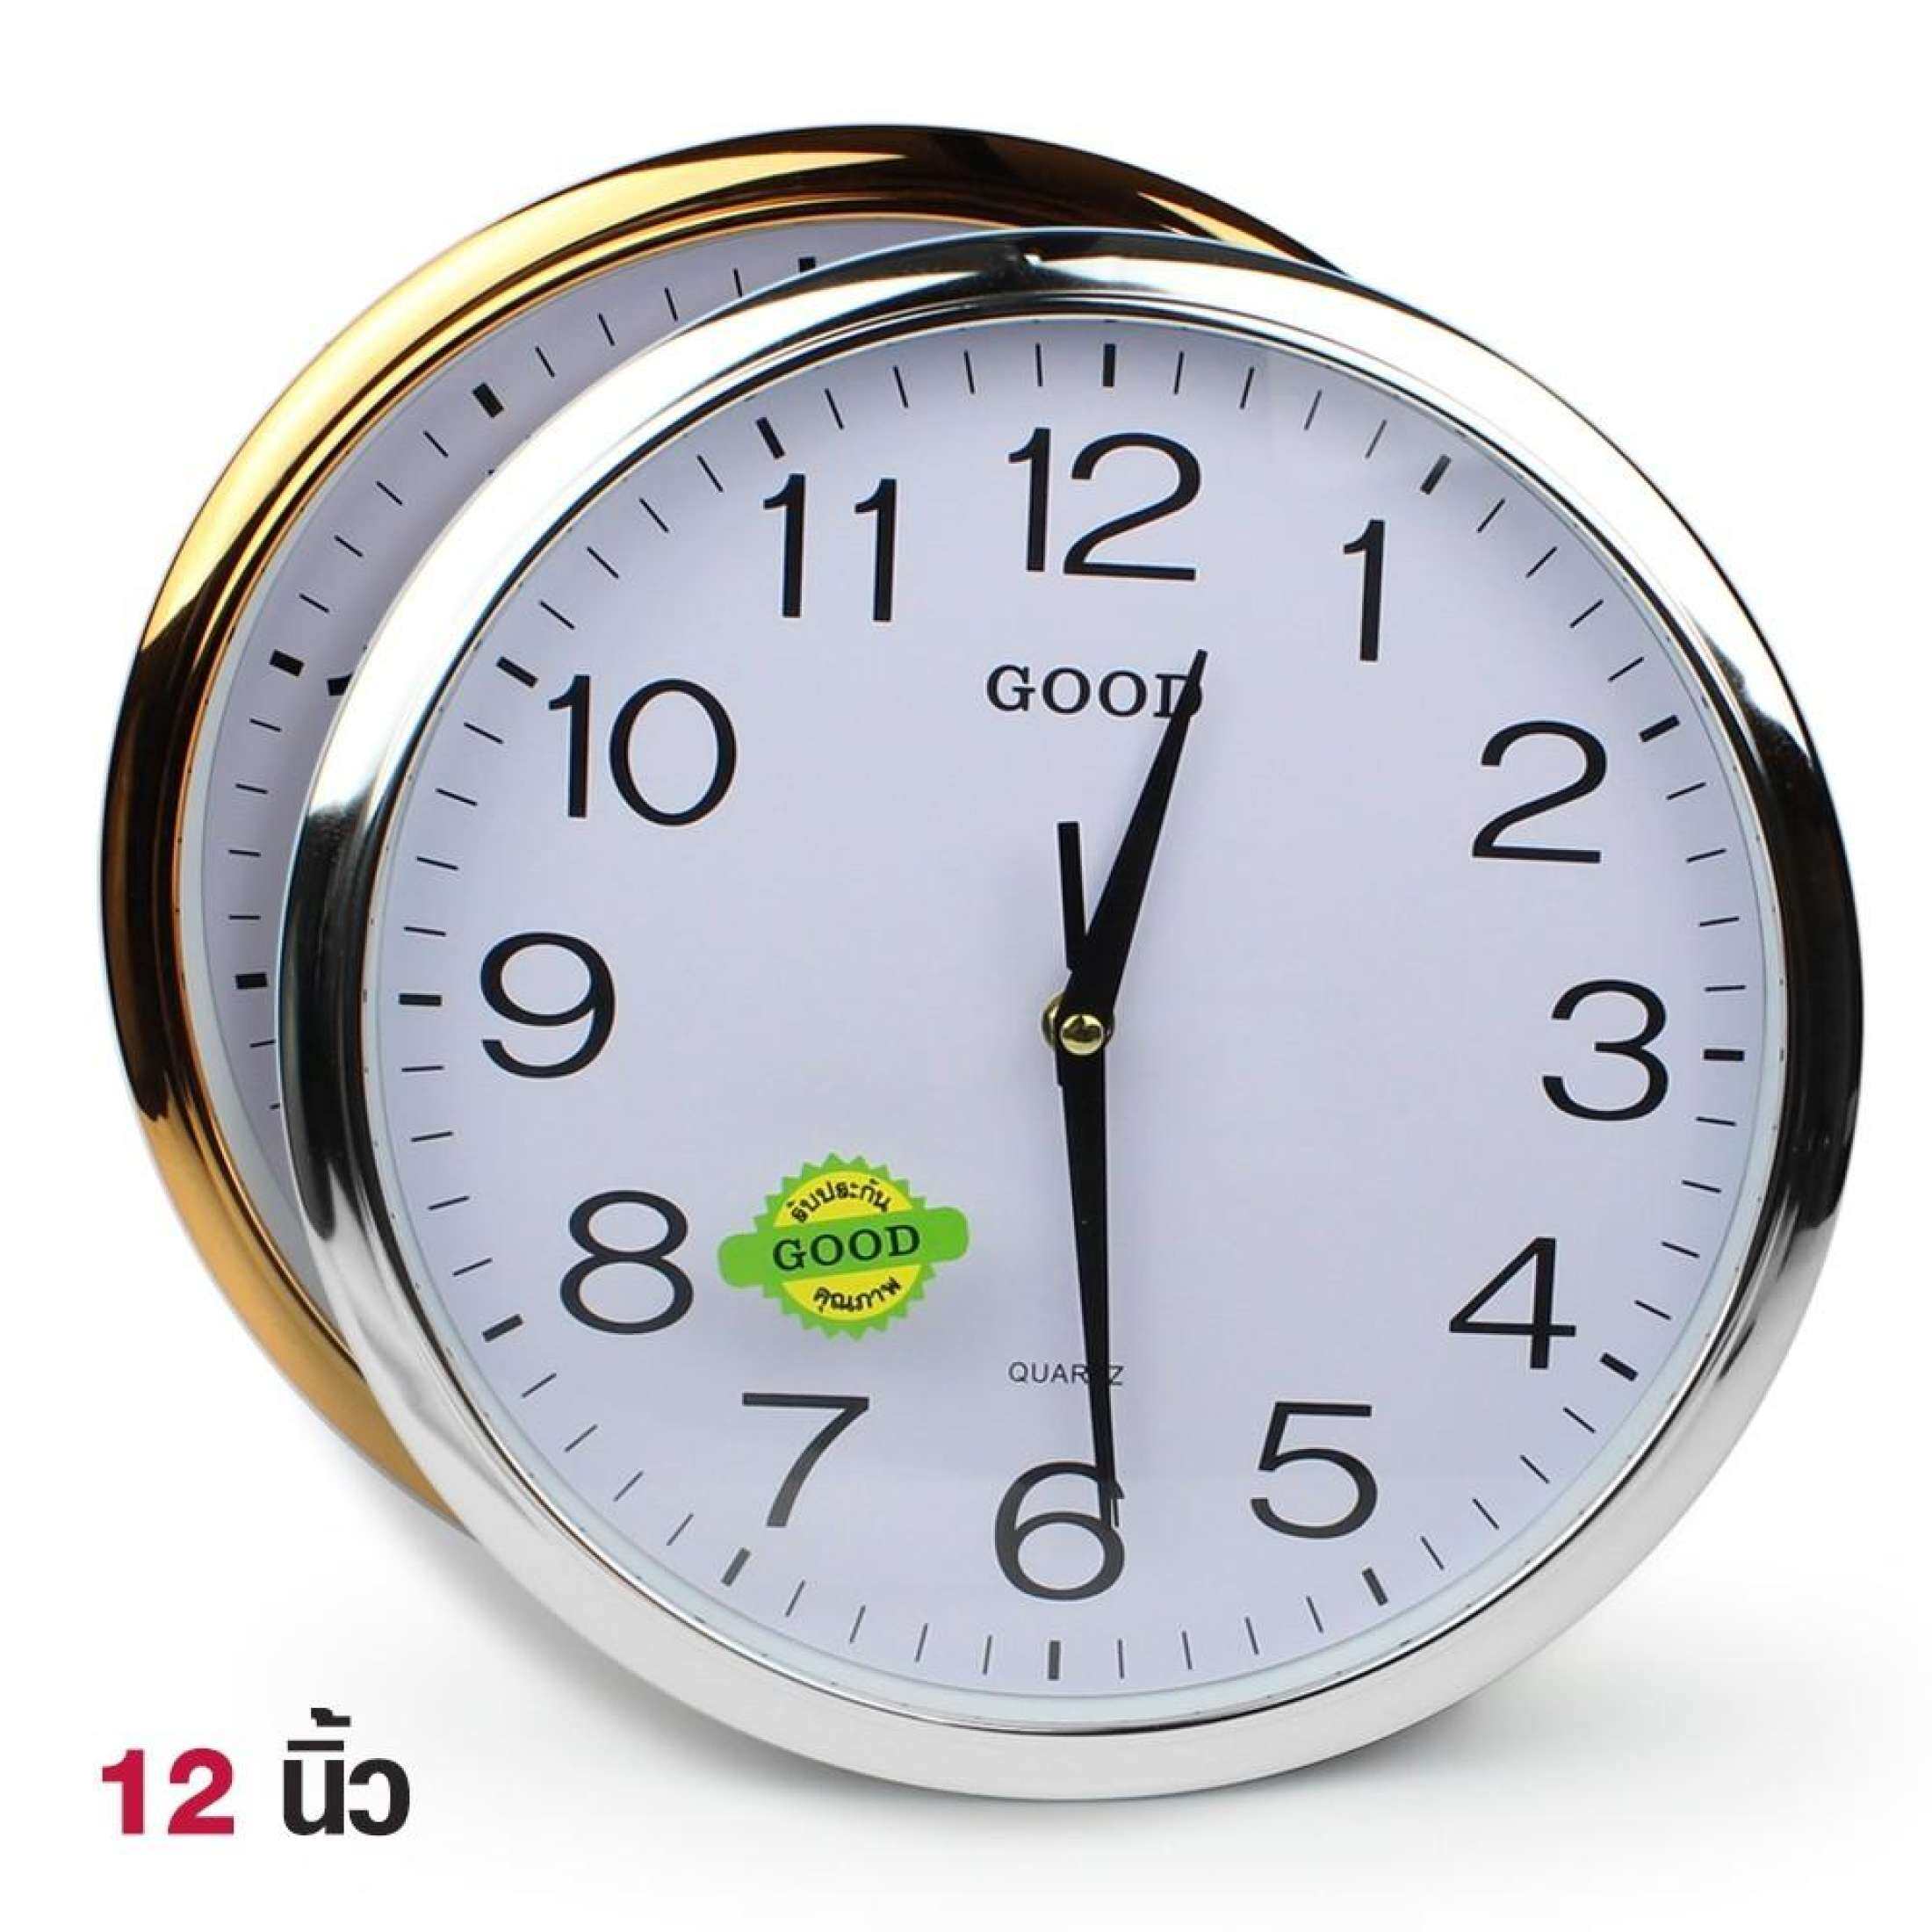 Telecorsa Thailand นาฬิกา นาฬิกาแขวน ทรงกลม ขนาด 12 นิ้ว ขอบเงิน ขอบทอง รุ่น Quartz-Clock-231